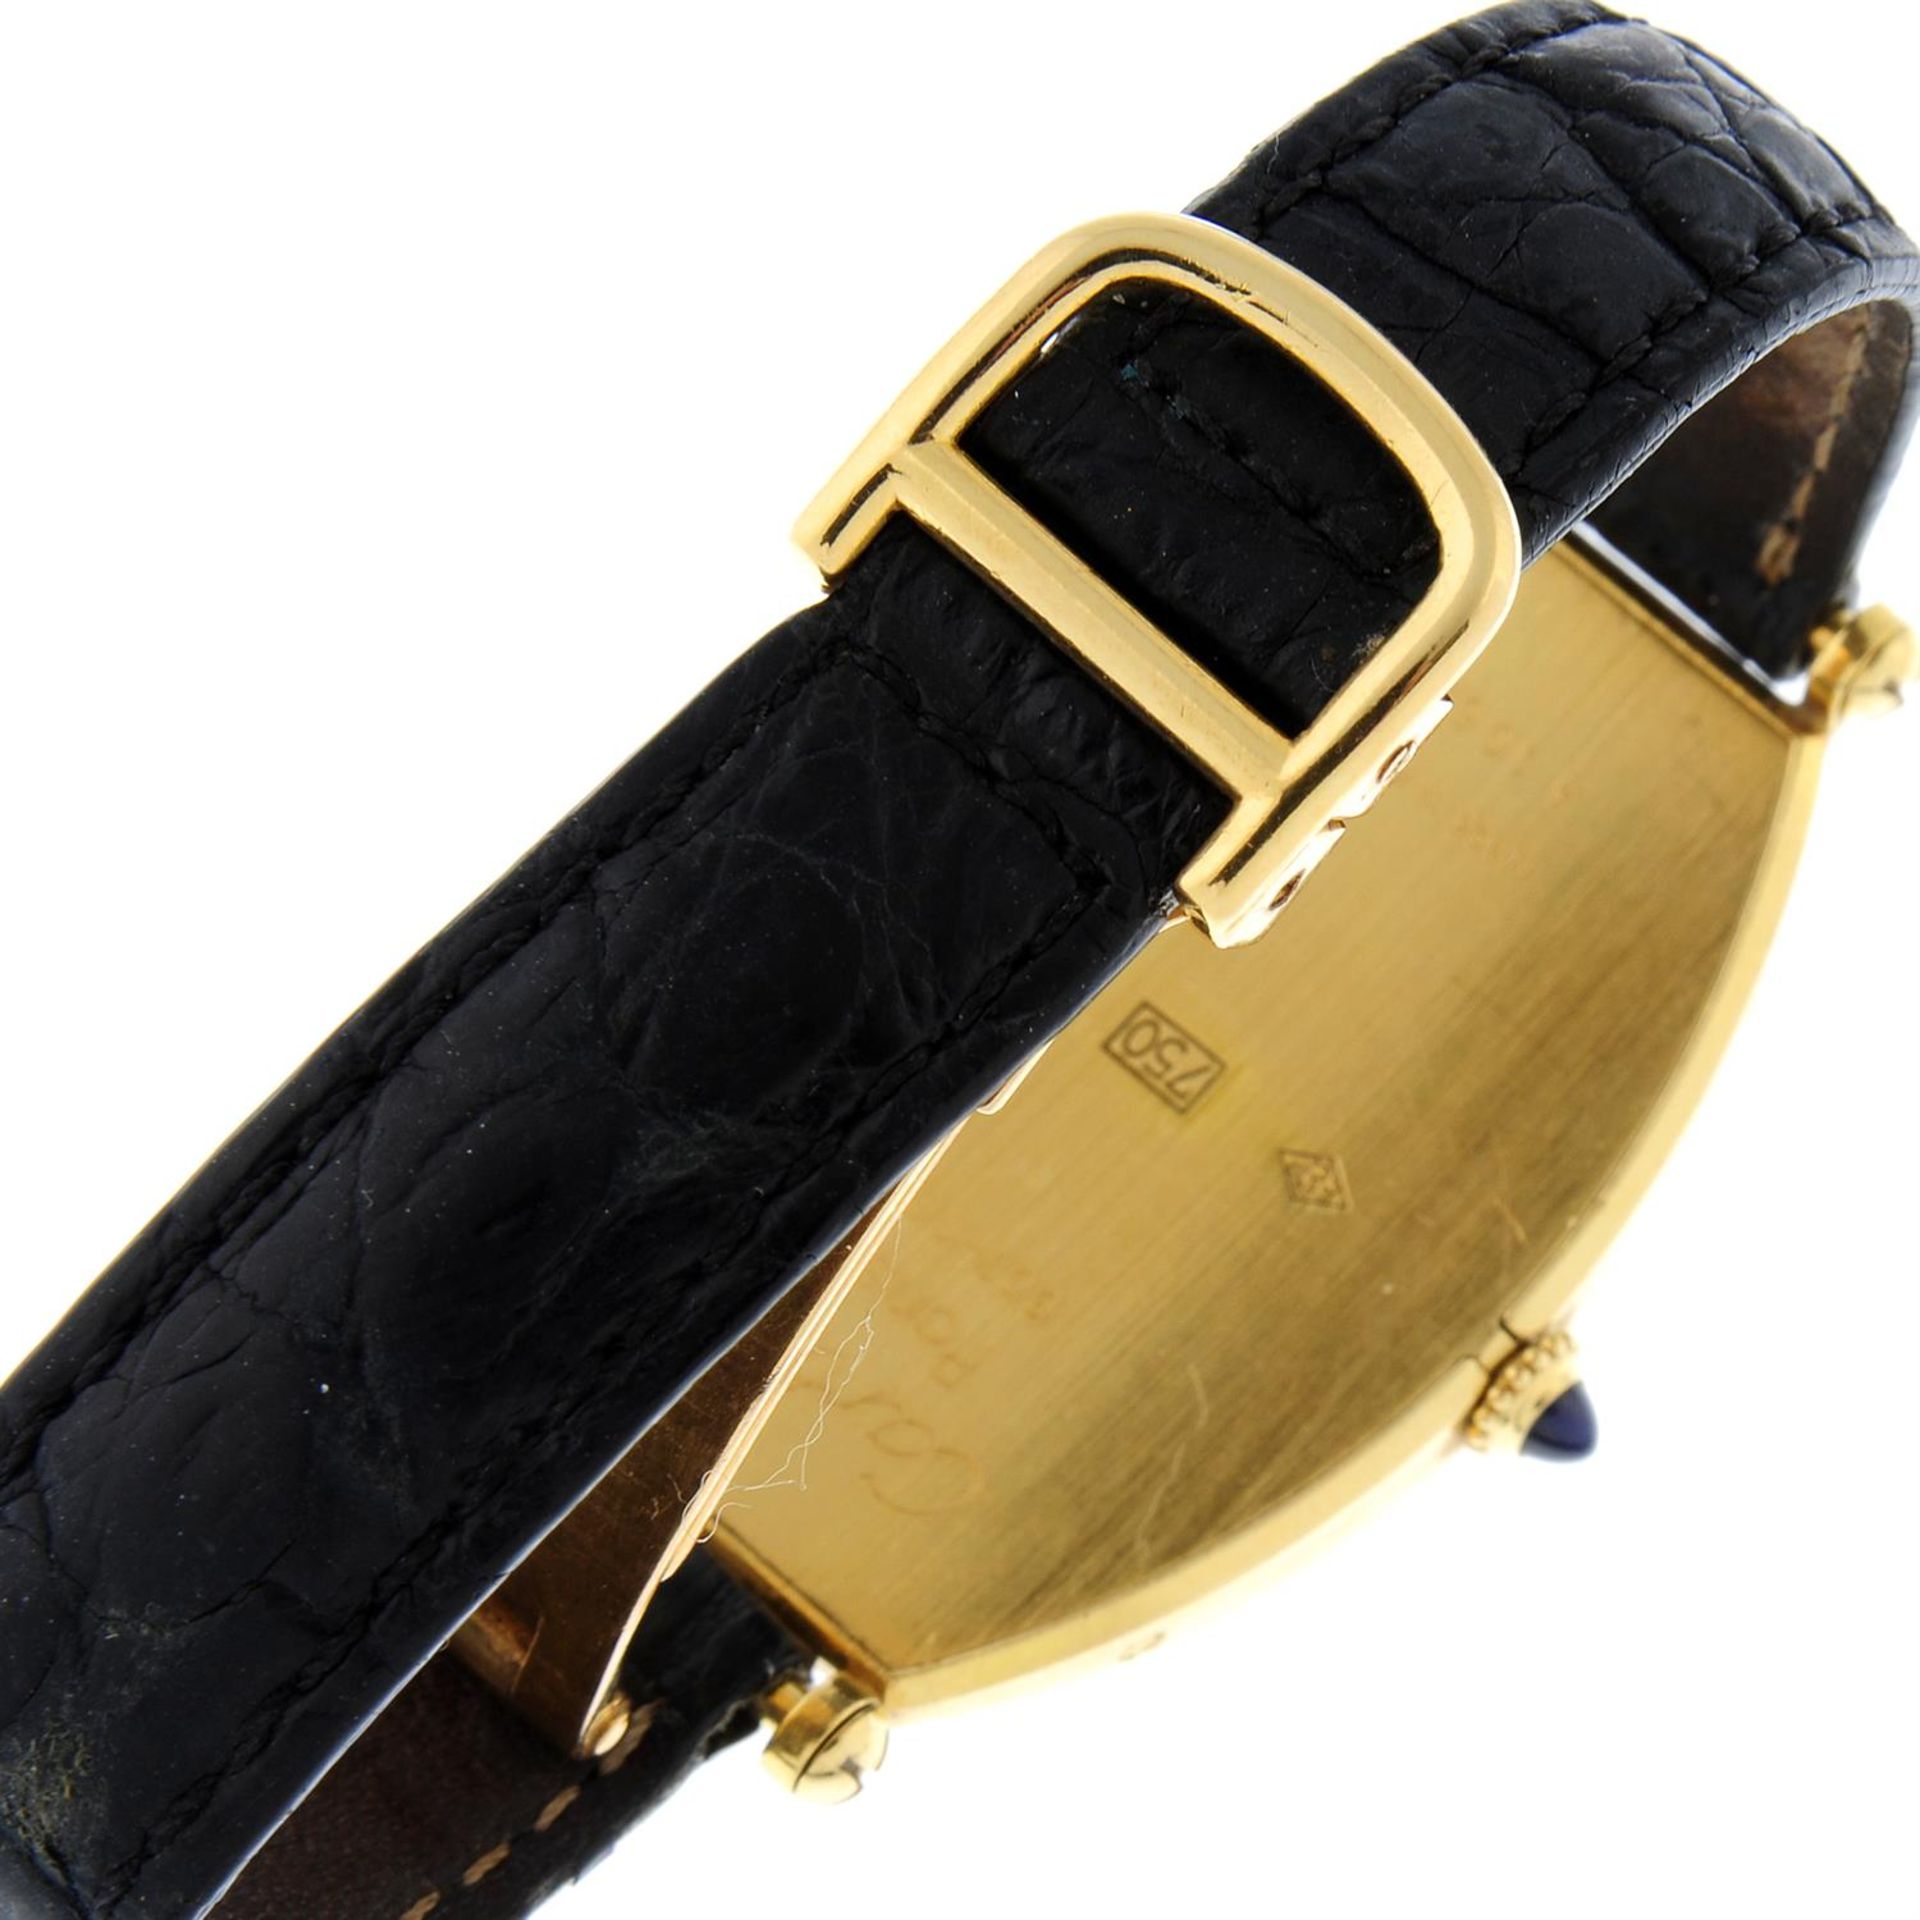 CARTIER - a yellow metal Tonneau wrist watch, 26x39mm. - Bild 2 aus 5